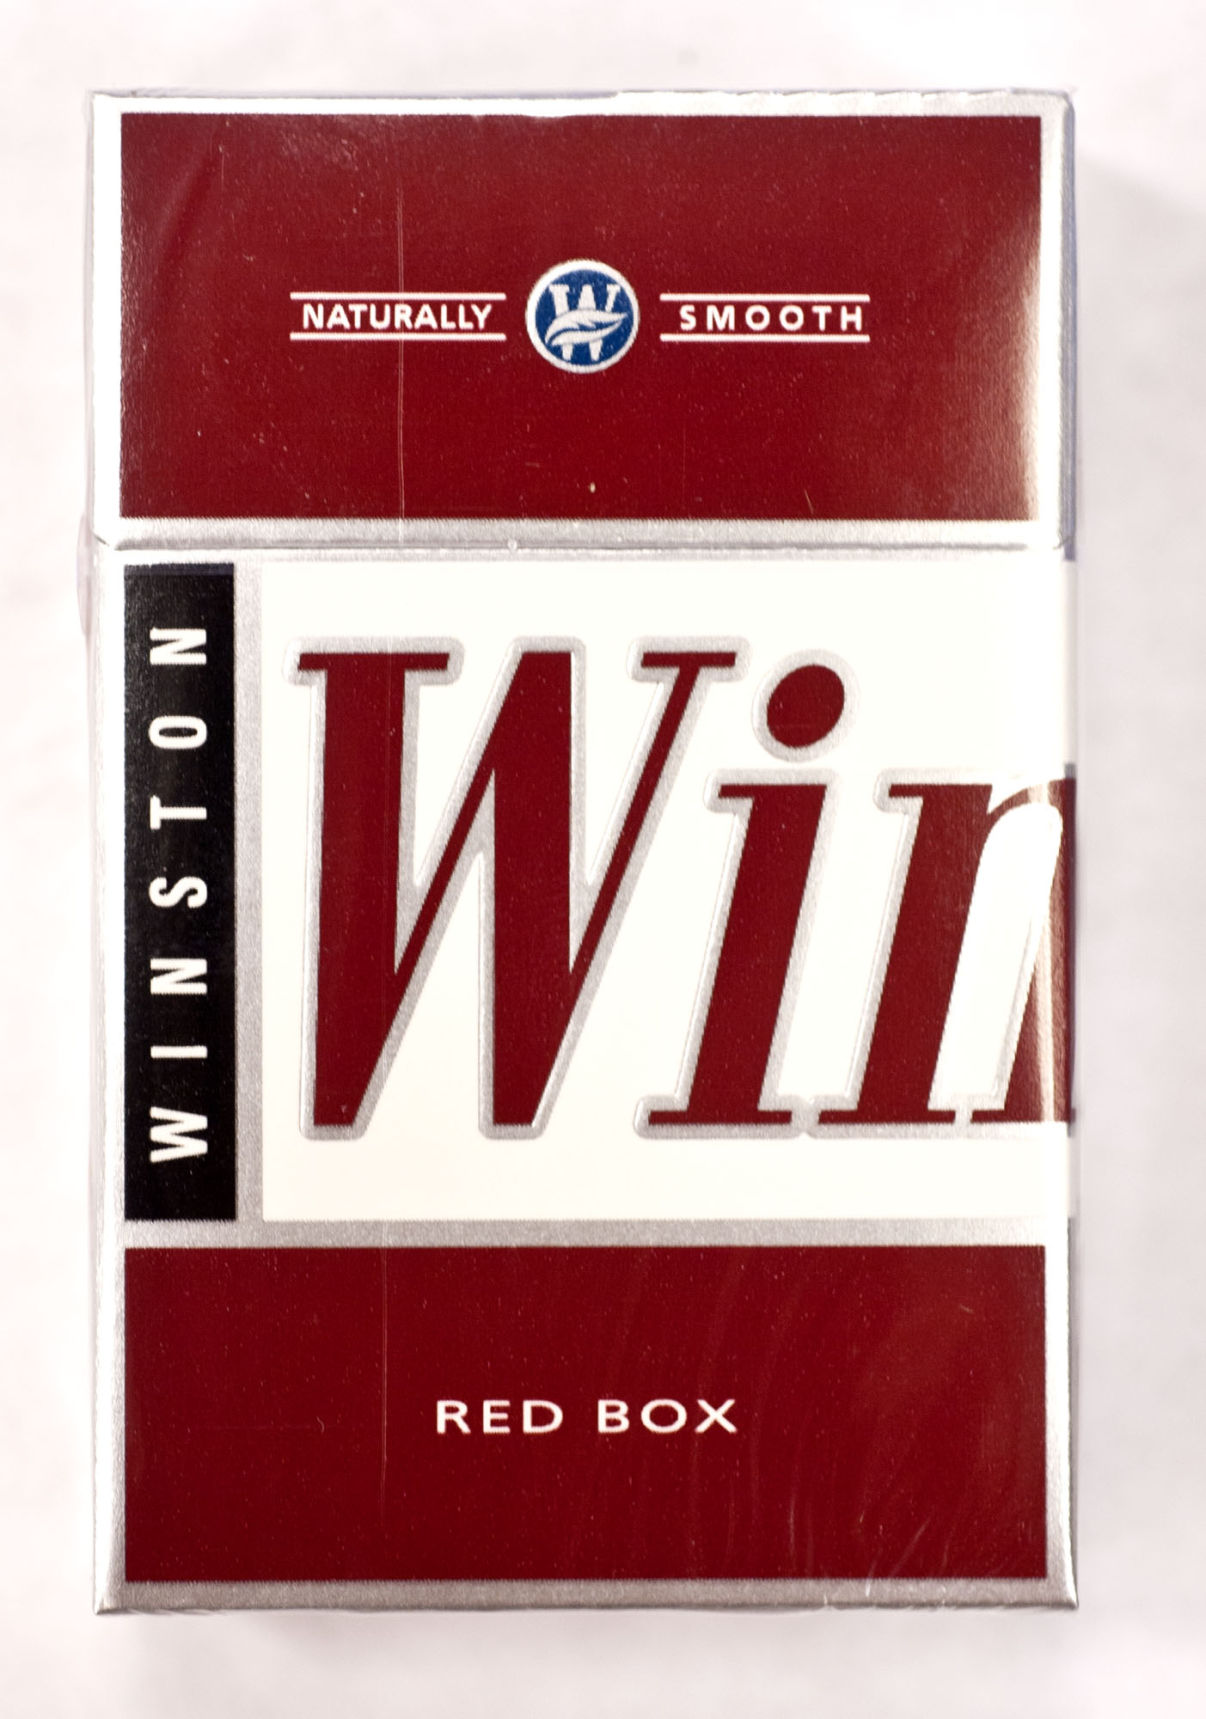 winston cigarettes customer service